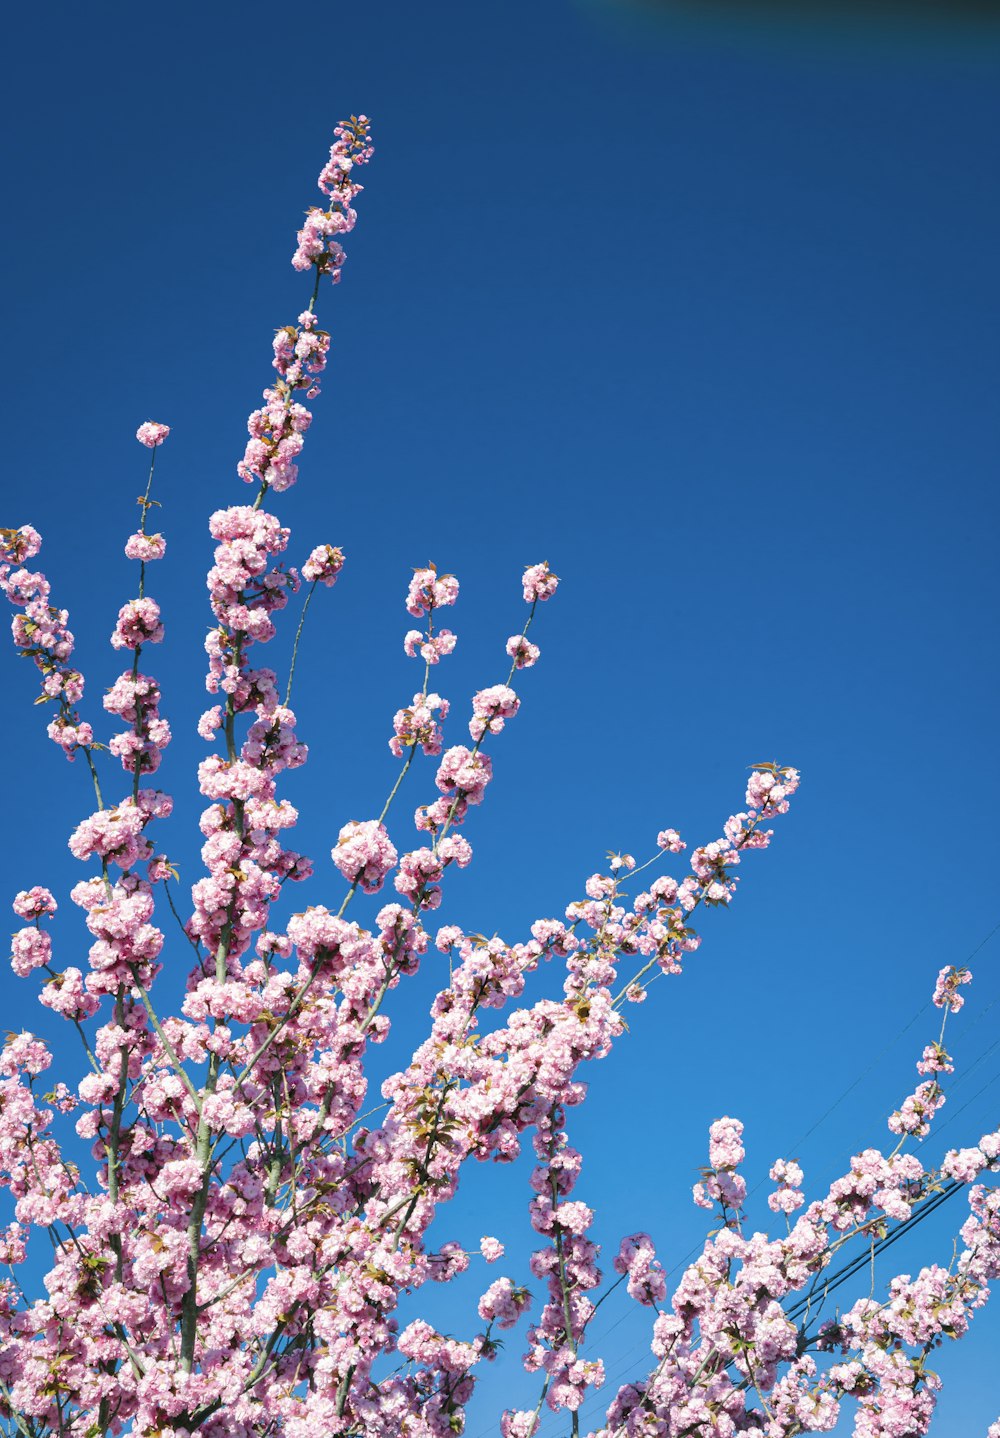 flor blanca y rosada bajo el cielo azul durante el día